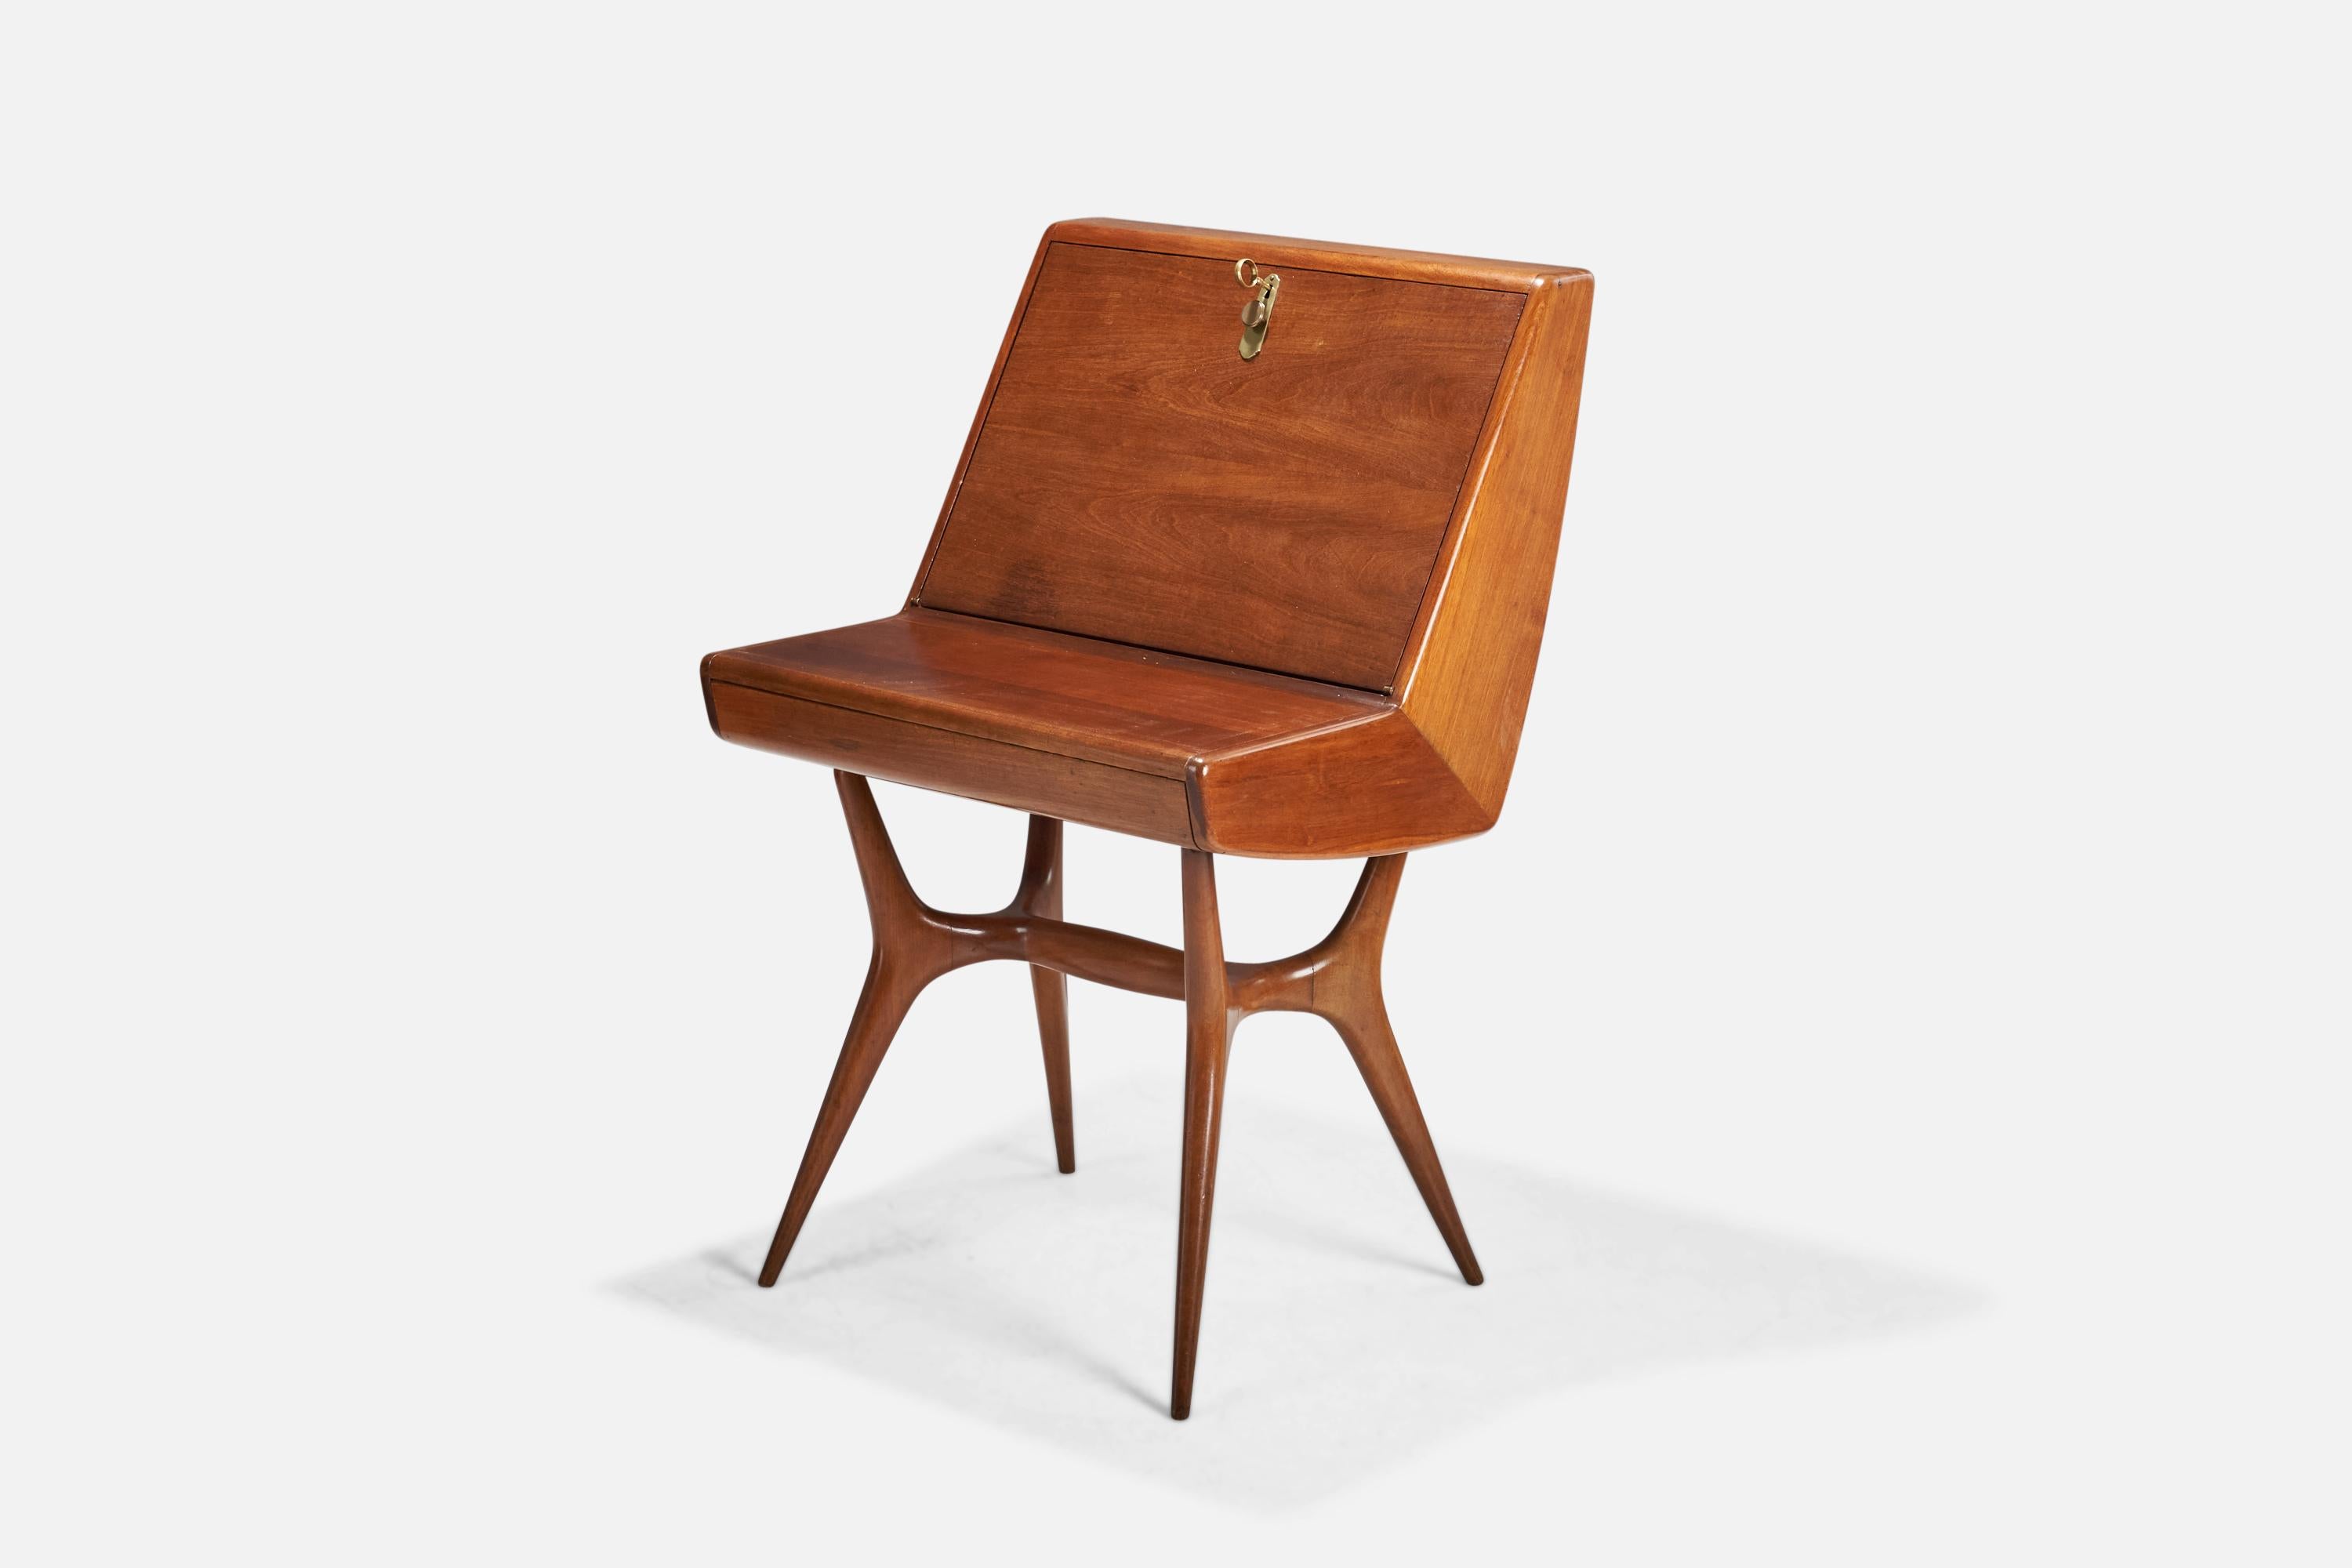 Ein Schreibtisch oder Sekretär aus Teakholz und Messing, entworfen und hergestellt von einem italienischen Designer, Italien, 1940er Jahre.